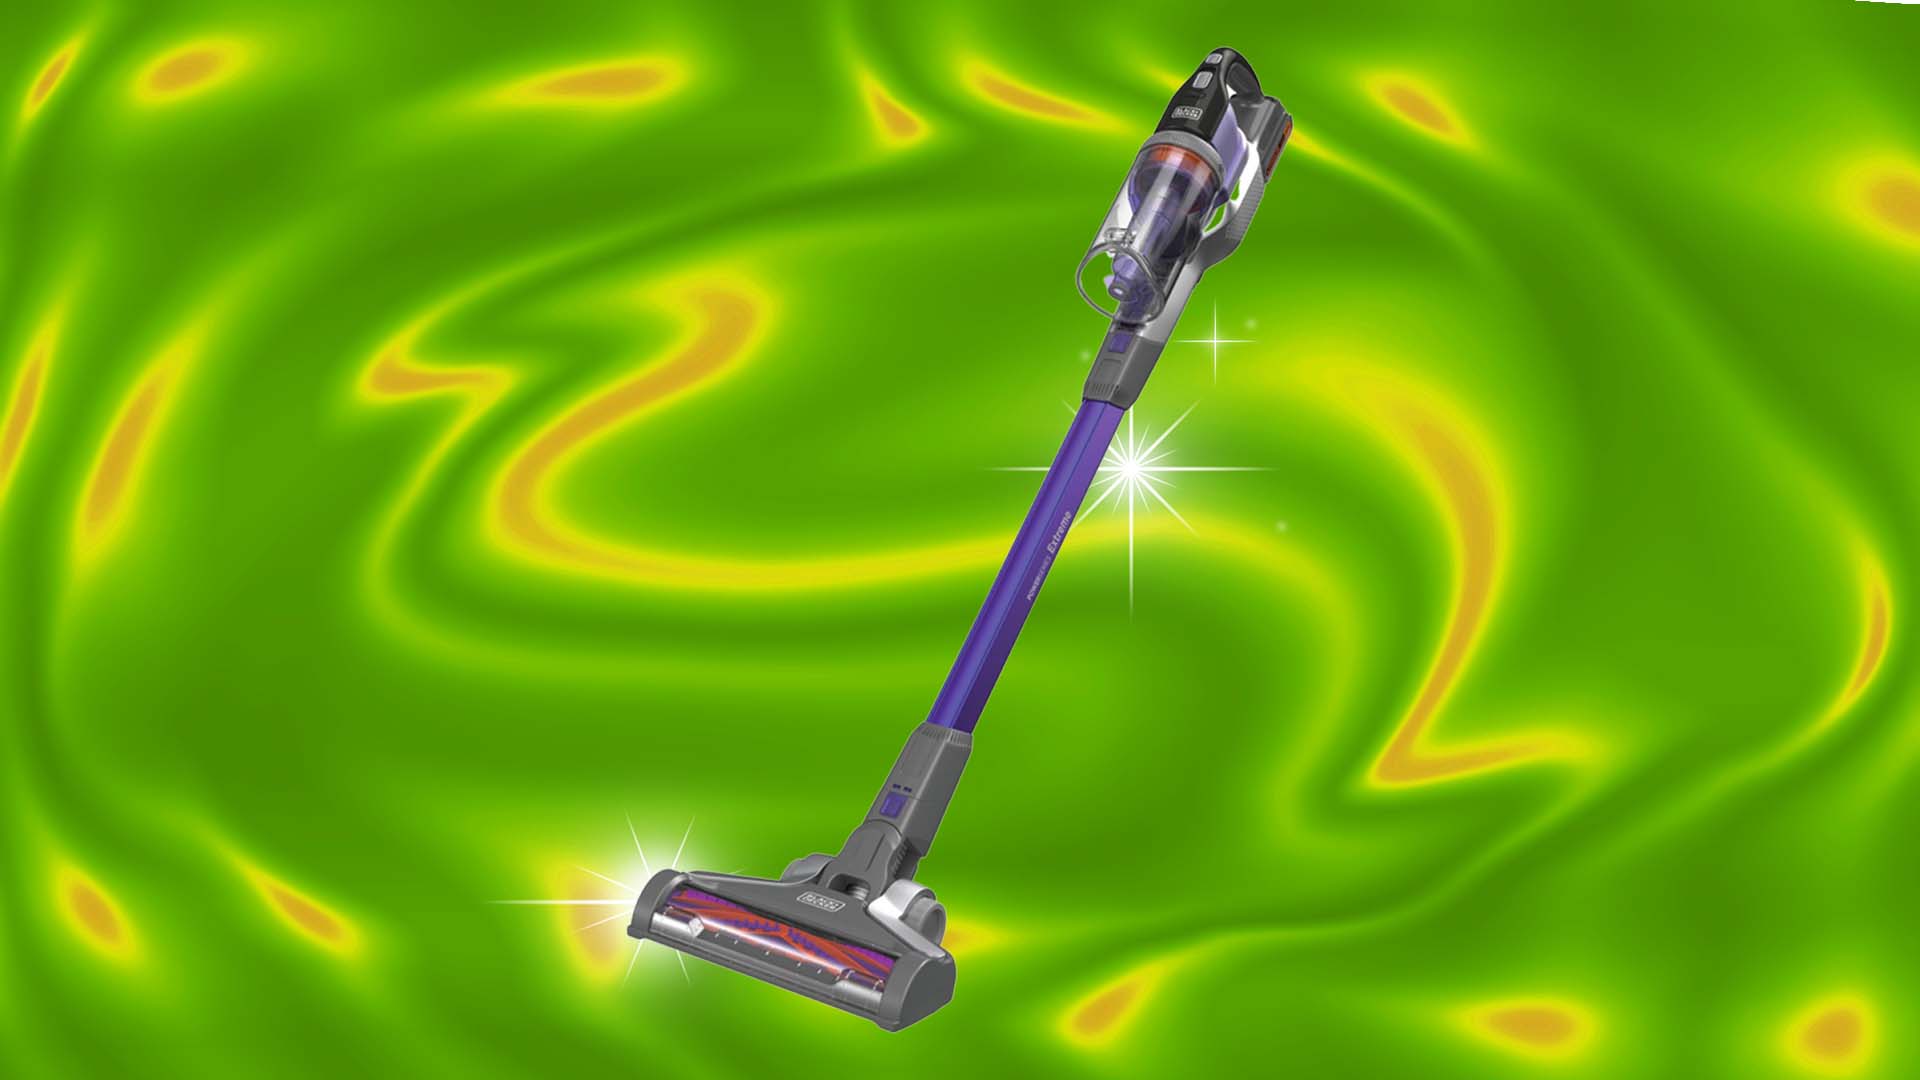 https://video-images.vice.com/articles/64b0689bce705434e12c5d91/lede/1689283953163-black-decker-powerseries-extreme-pet-stick-vacuum-lead-image.jpeg